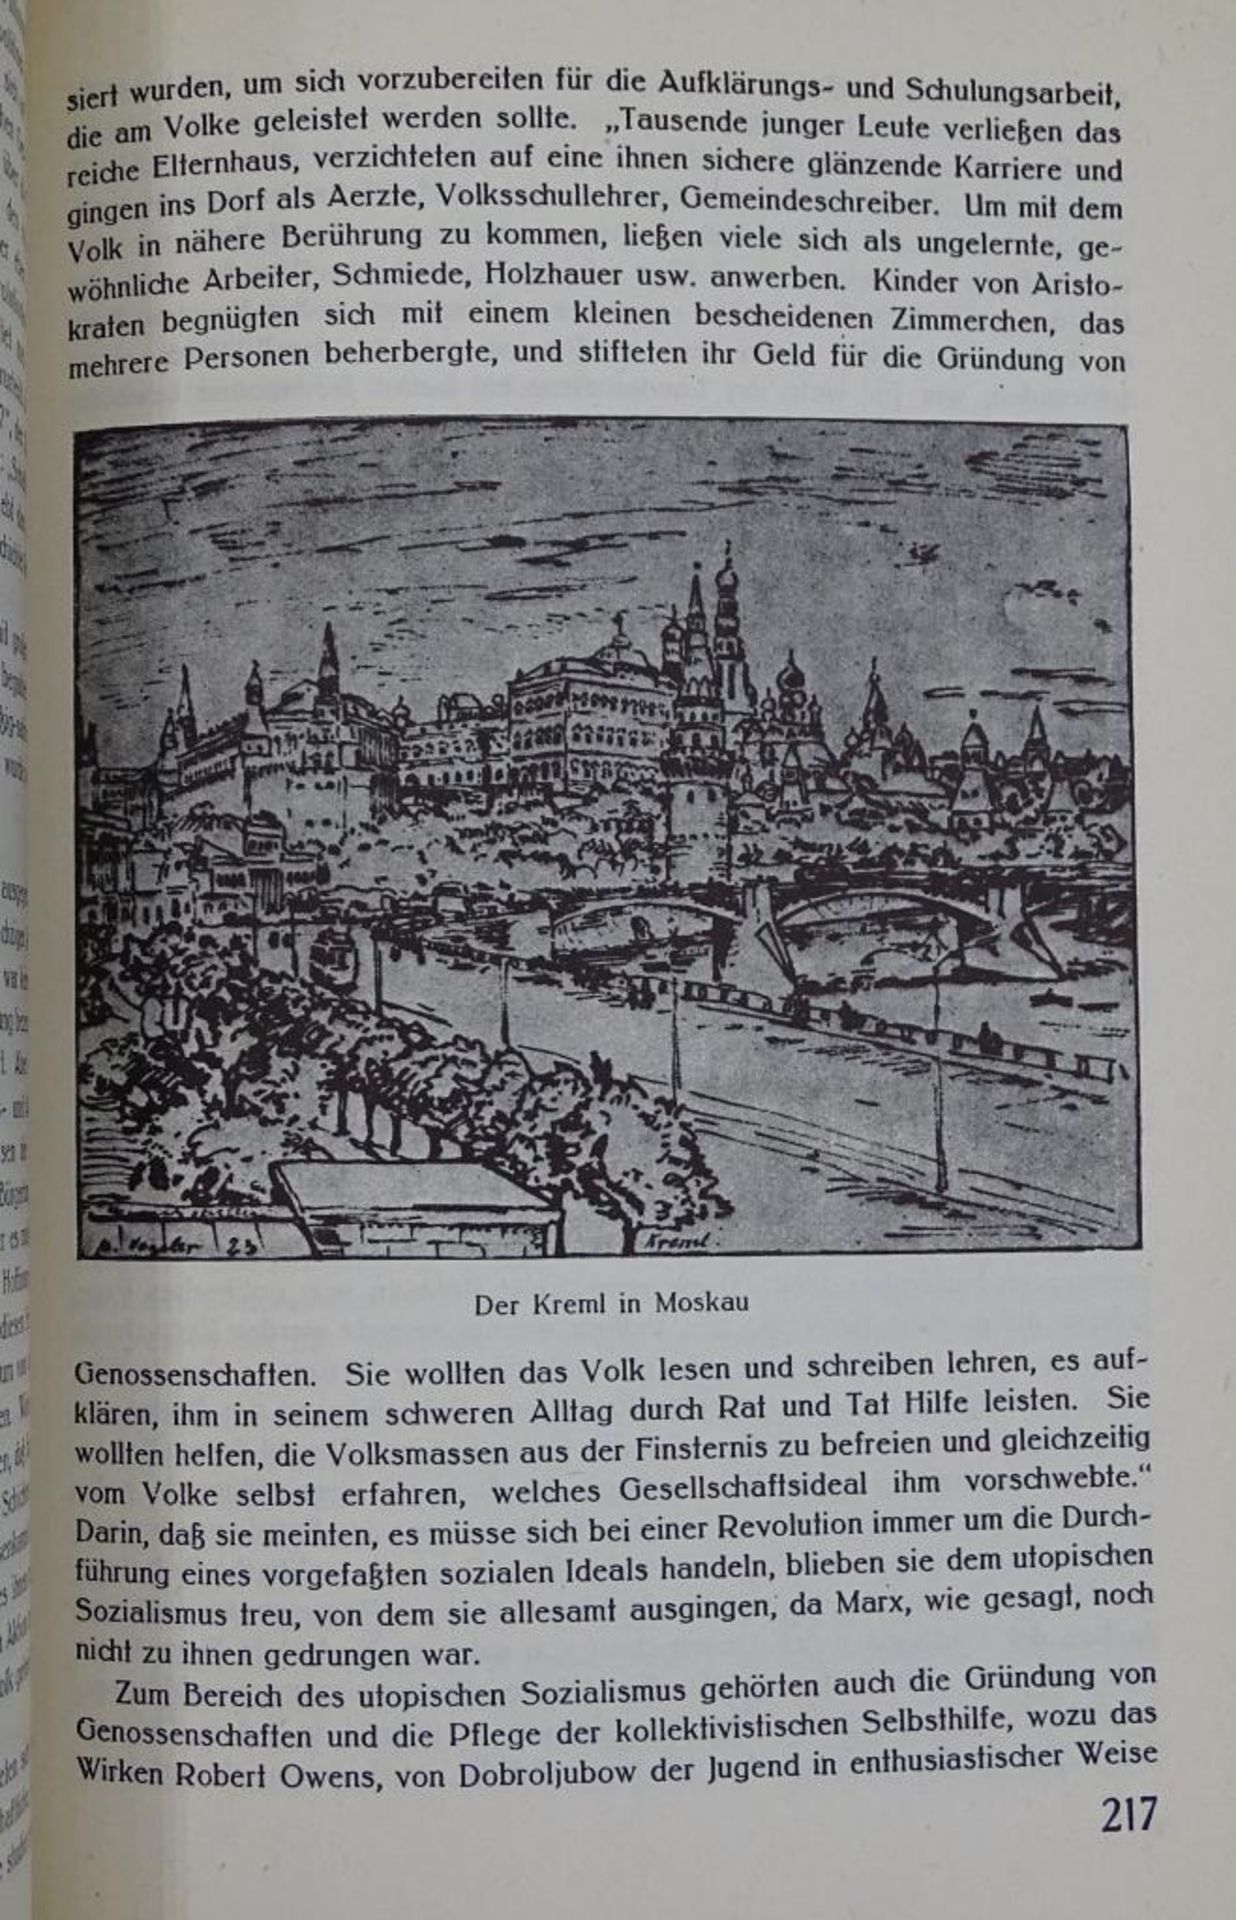 Die Revolutionen Europas von Otto Rühle,Focus Verlag, Wiesbaden 1973,Band I-II - Bild 5 aus 10